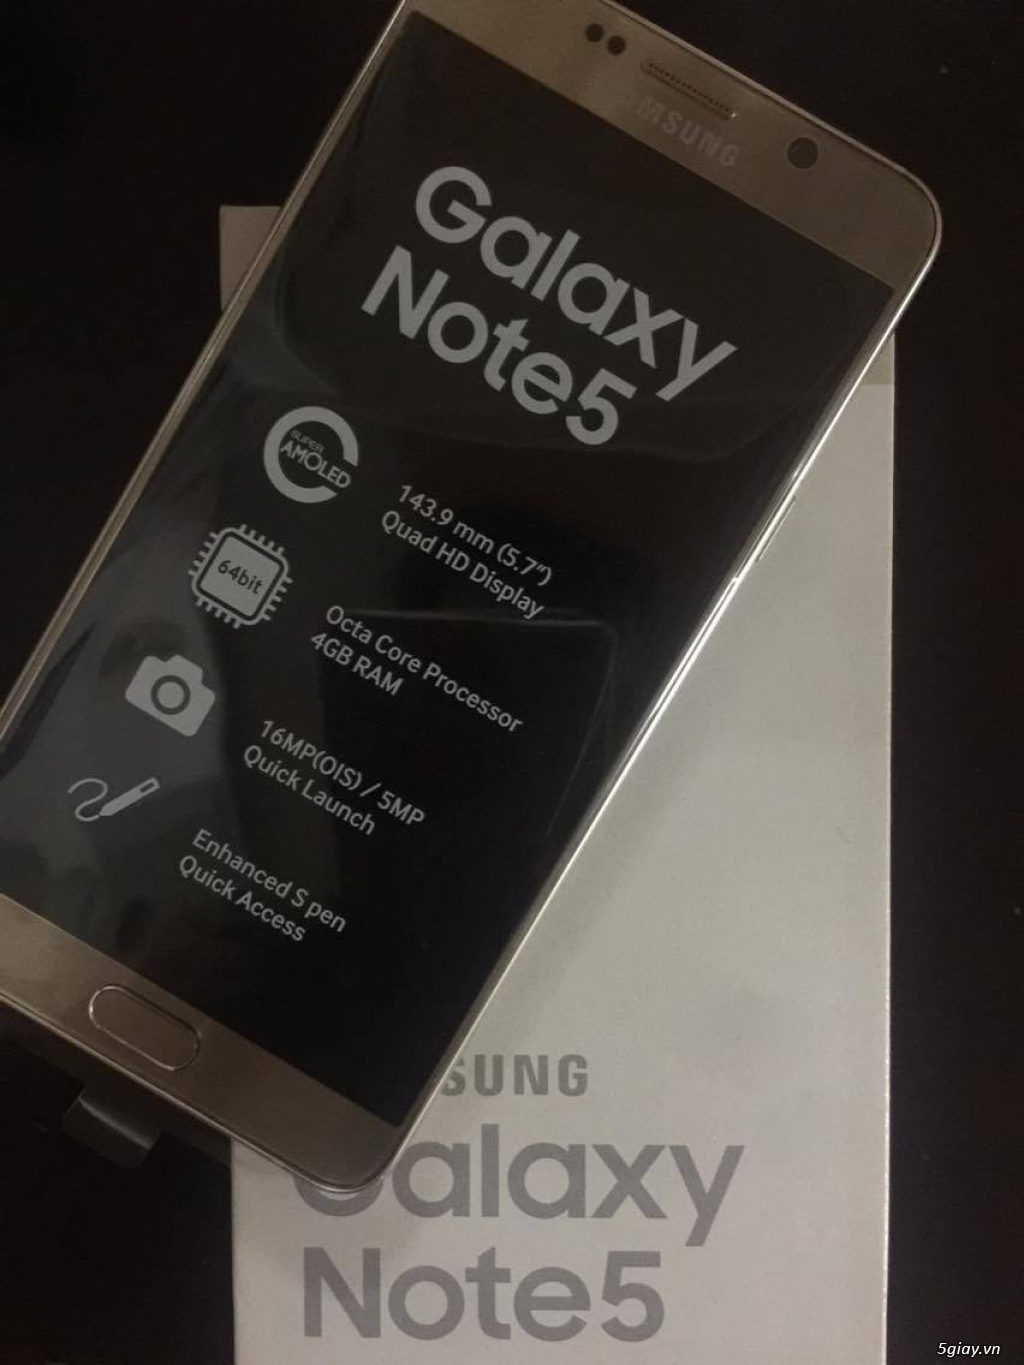 Samsung Galaxy Note 5 GOLD 32G - 2